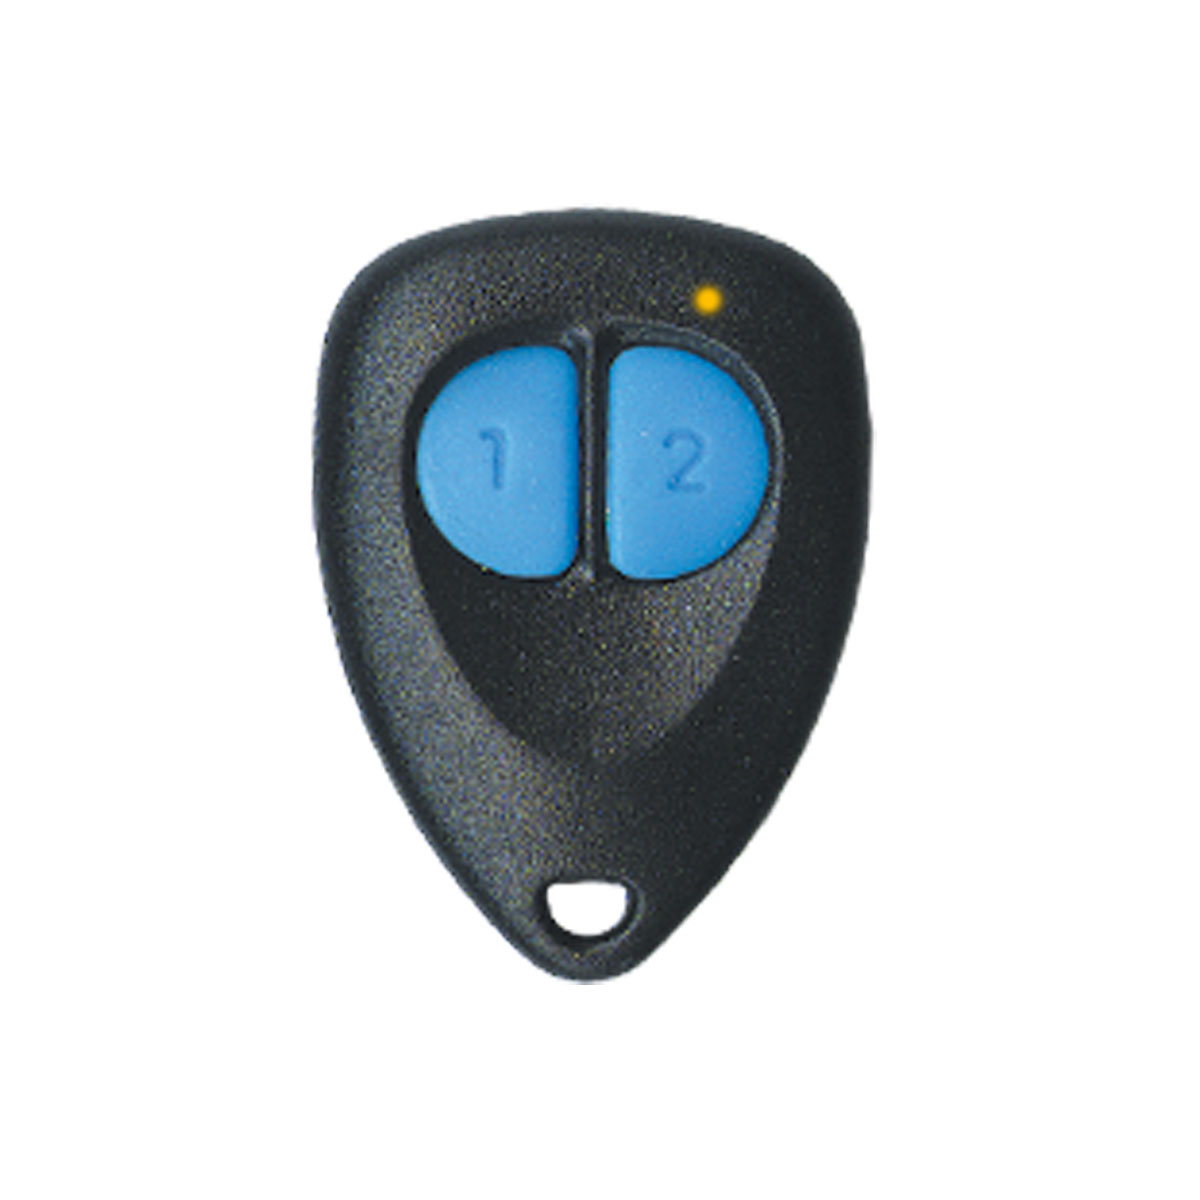 Rhino GTTX 2 Button Rolling Code Remote